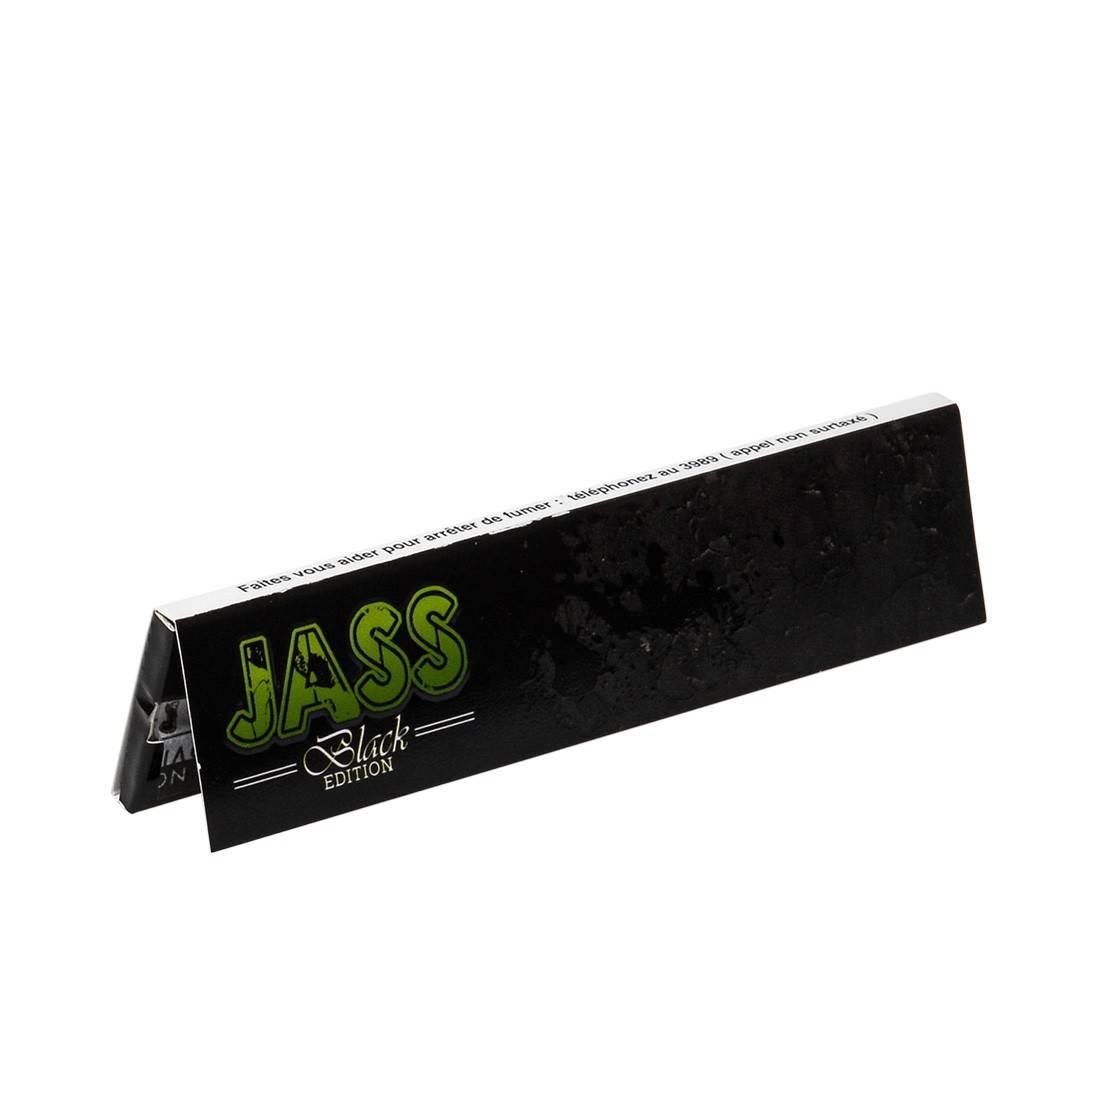 JASS slim "black edition" 3 boites de 50 carnets de feuilles 